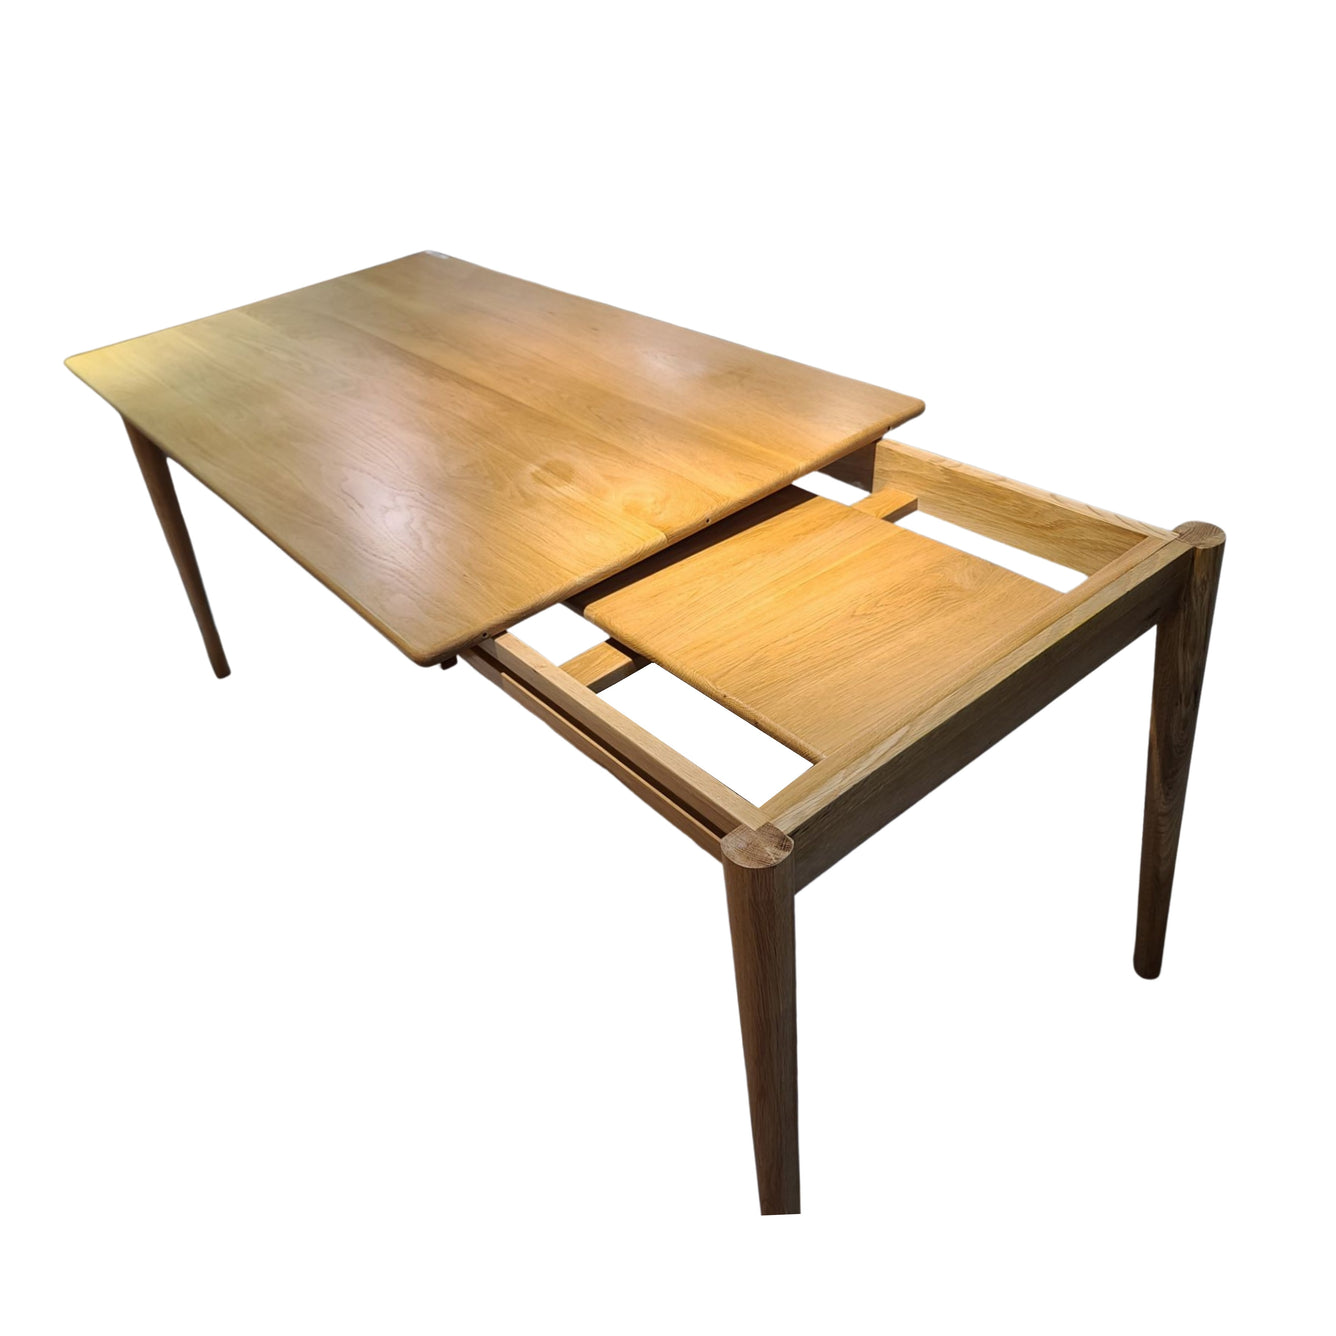 OPAL REX Solid Oak Table